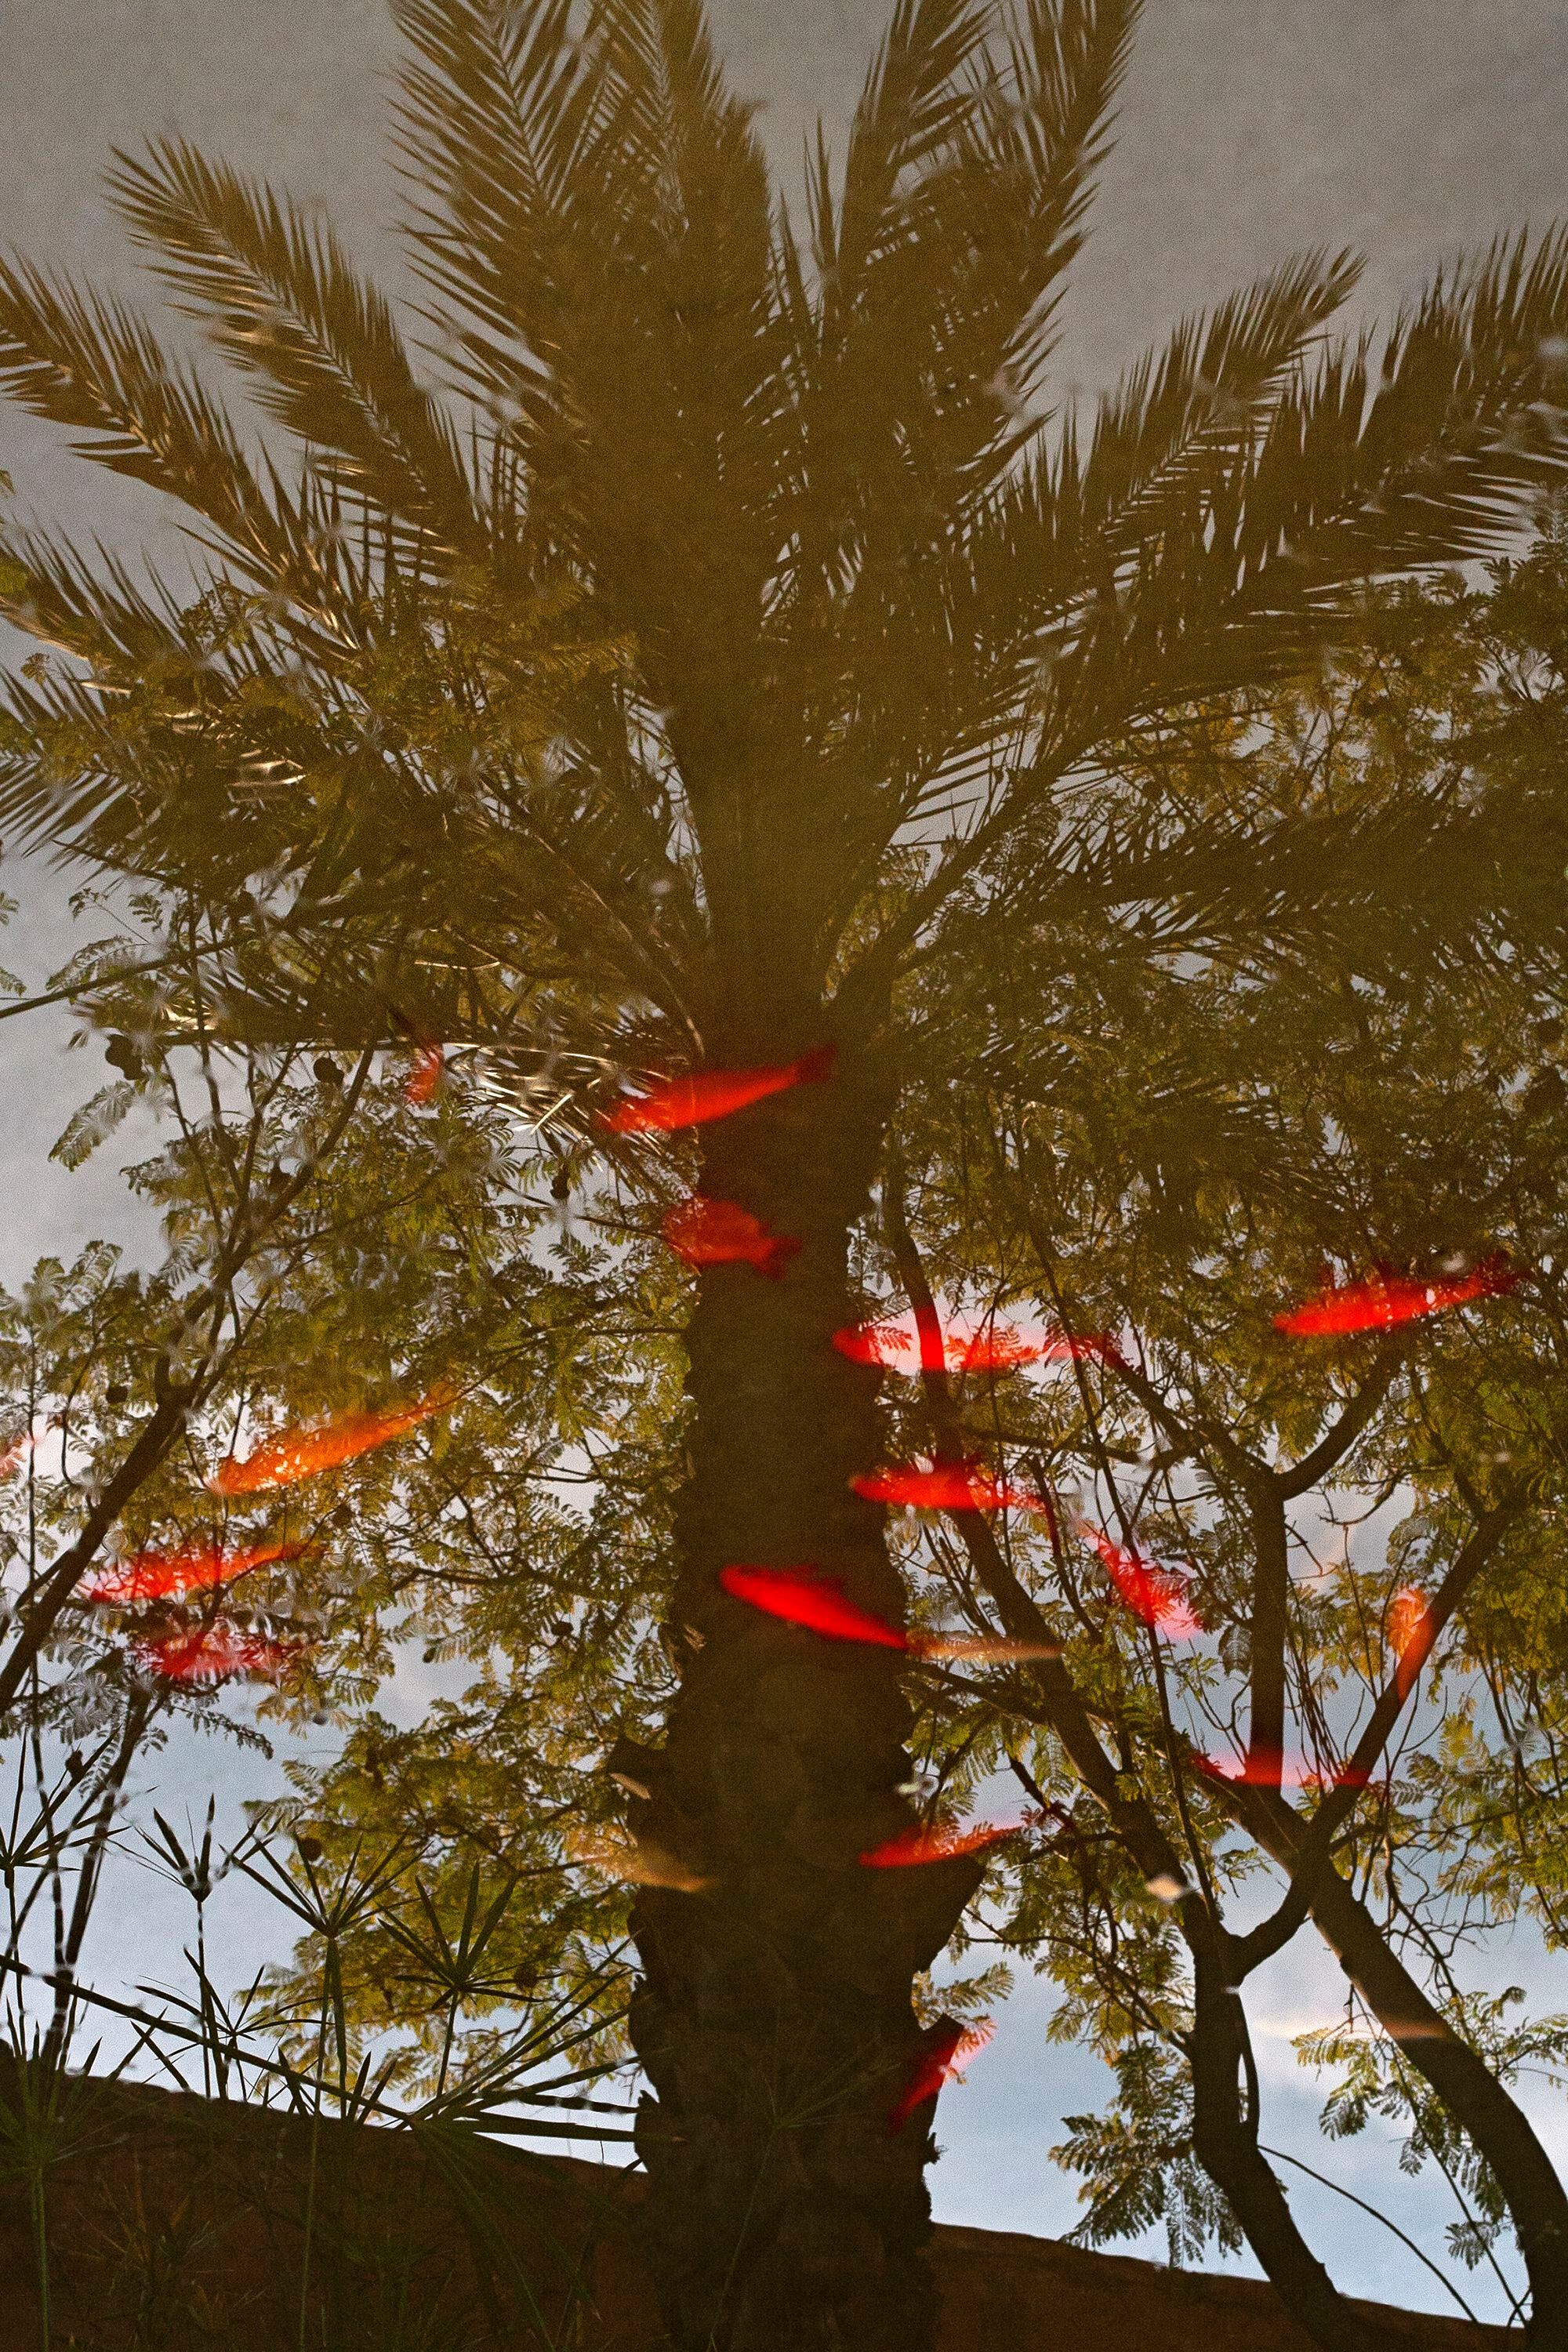 Una palmera reflejada en un estanque con carpas naranjas.